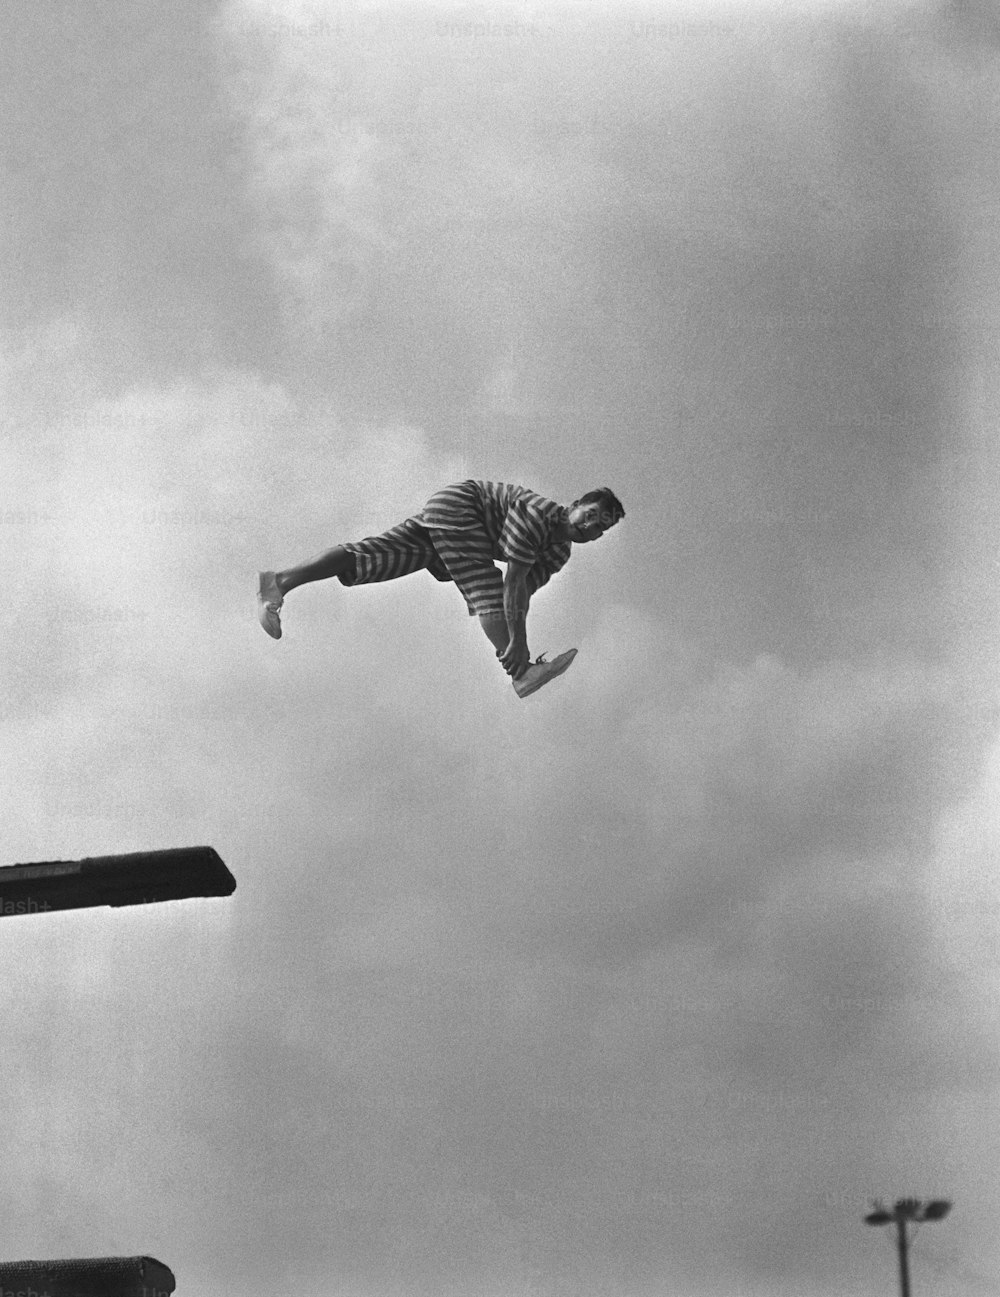 STATI UNITI - 1960 circa: Clown sul trampolino.